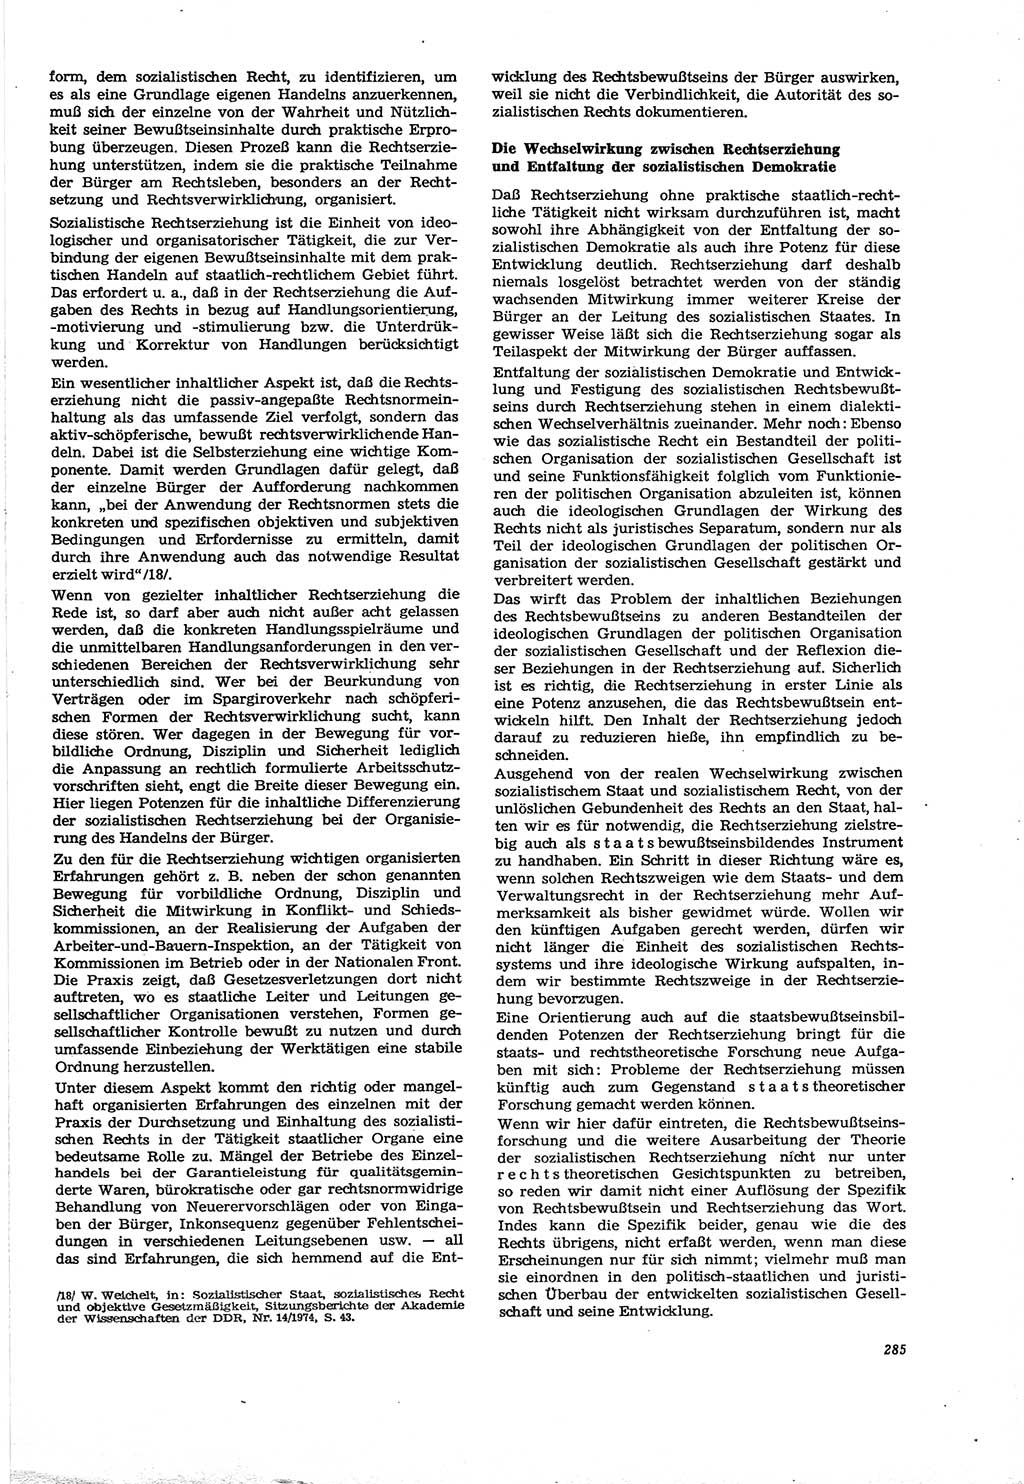 Neue Justiz (NJ), Zeitschrift für Recht und Rechtswissenschaft [Deutsche Demokratische Republik (DDR)], 30. Jahrgang 1976, Seite 285 (NJ DDR 1976, S. 285)